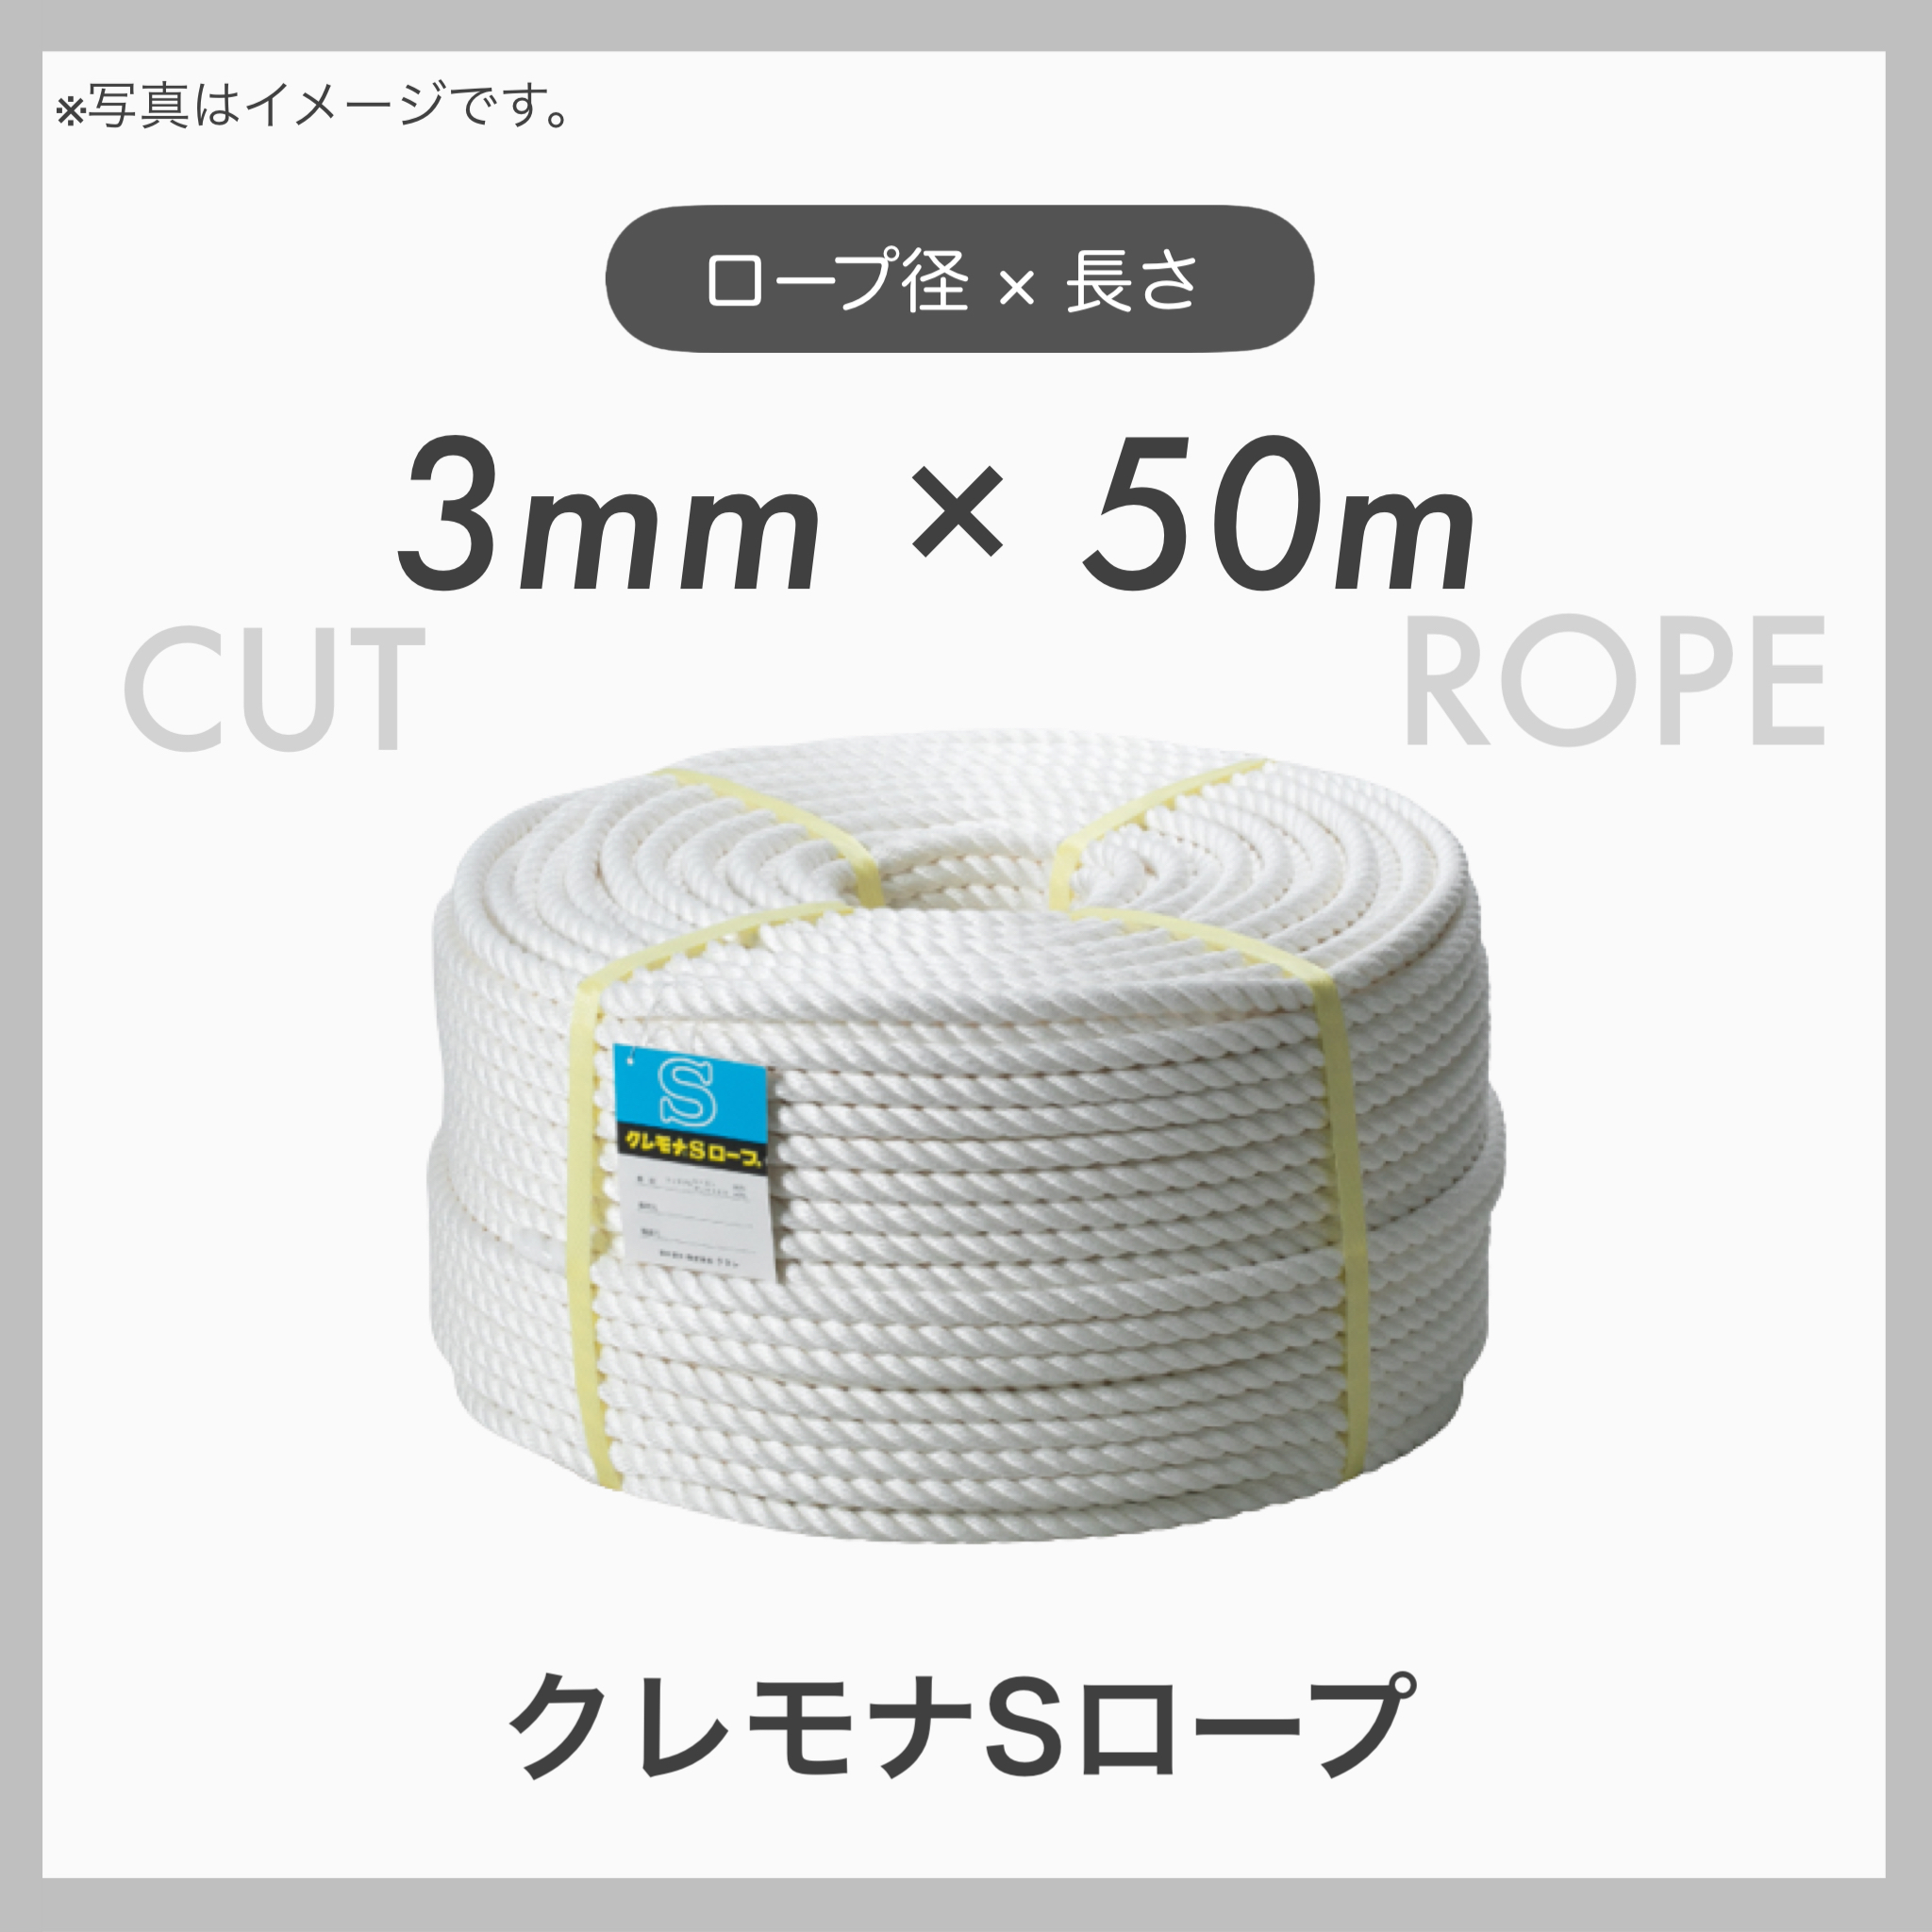 クレモナロープ クレモナSロープ 繊維ロープ 合繊ロープ 3mm×50m 直径